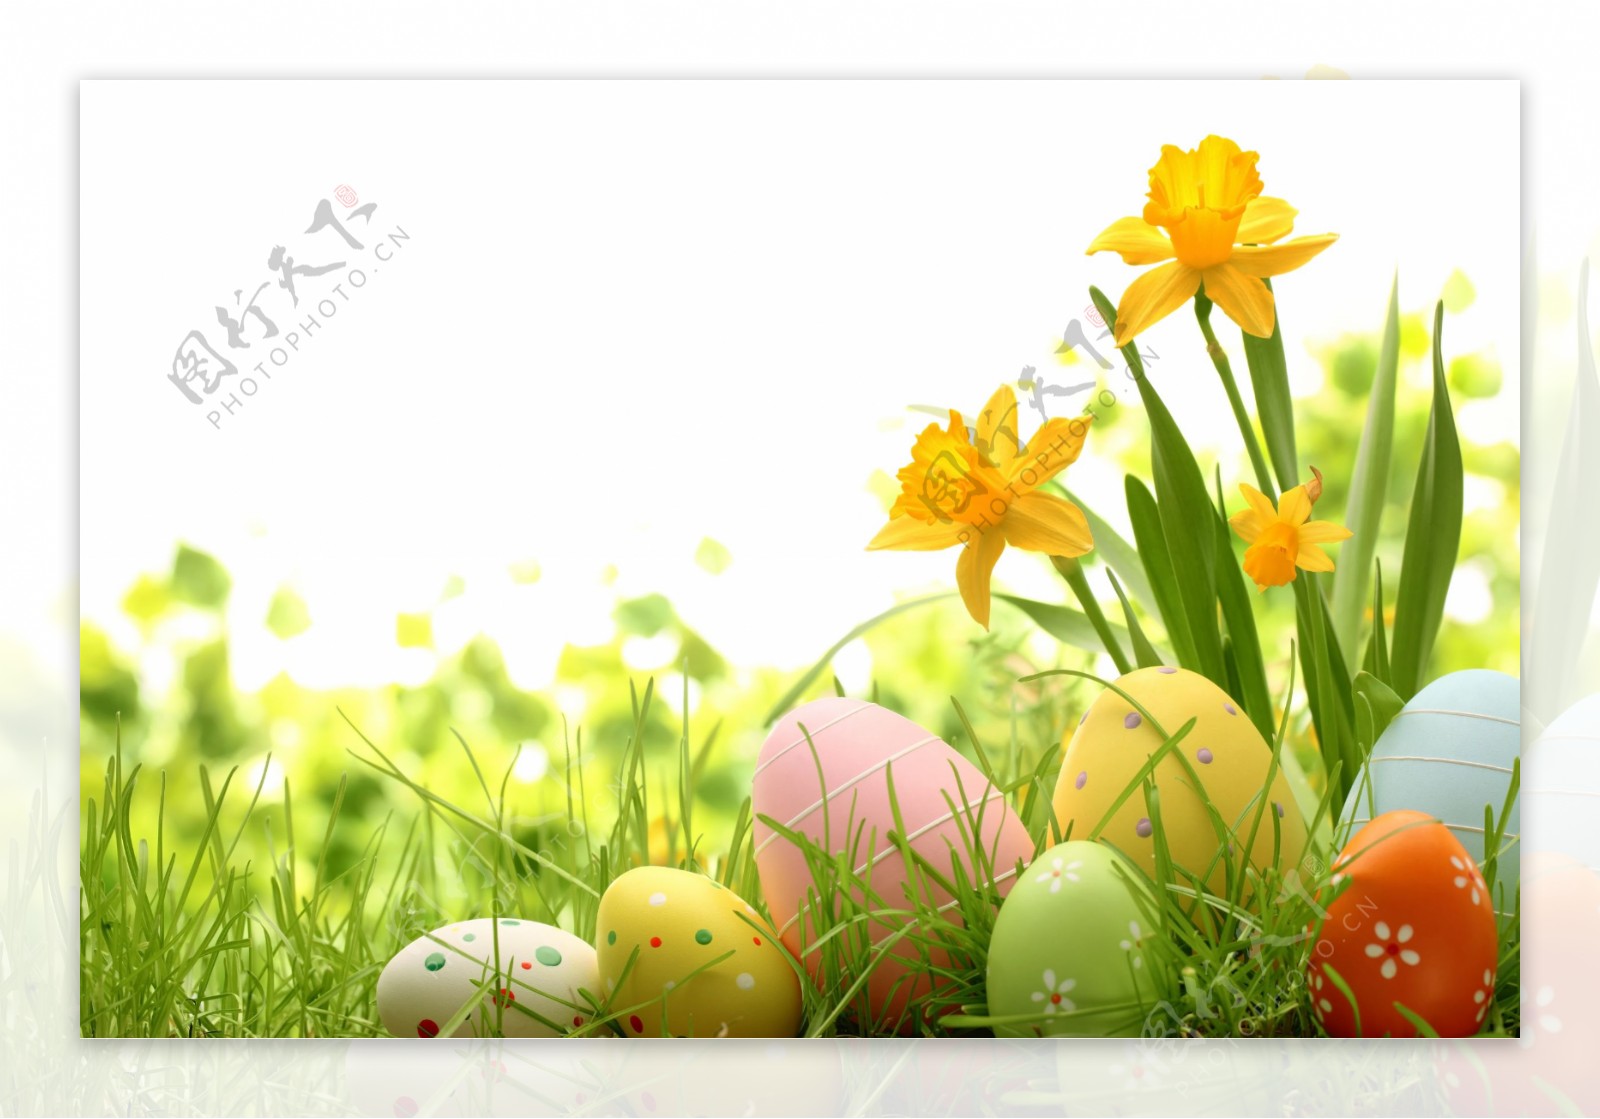 草丛里的复活节彩蛋图片